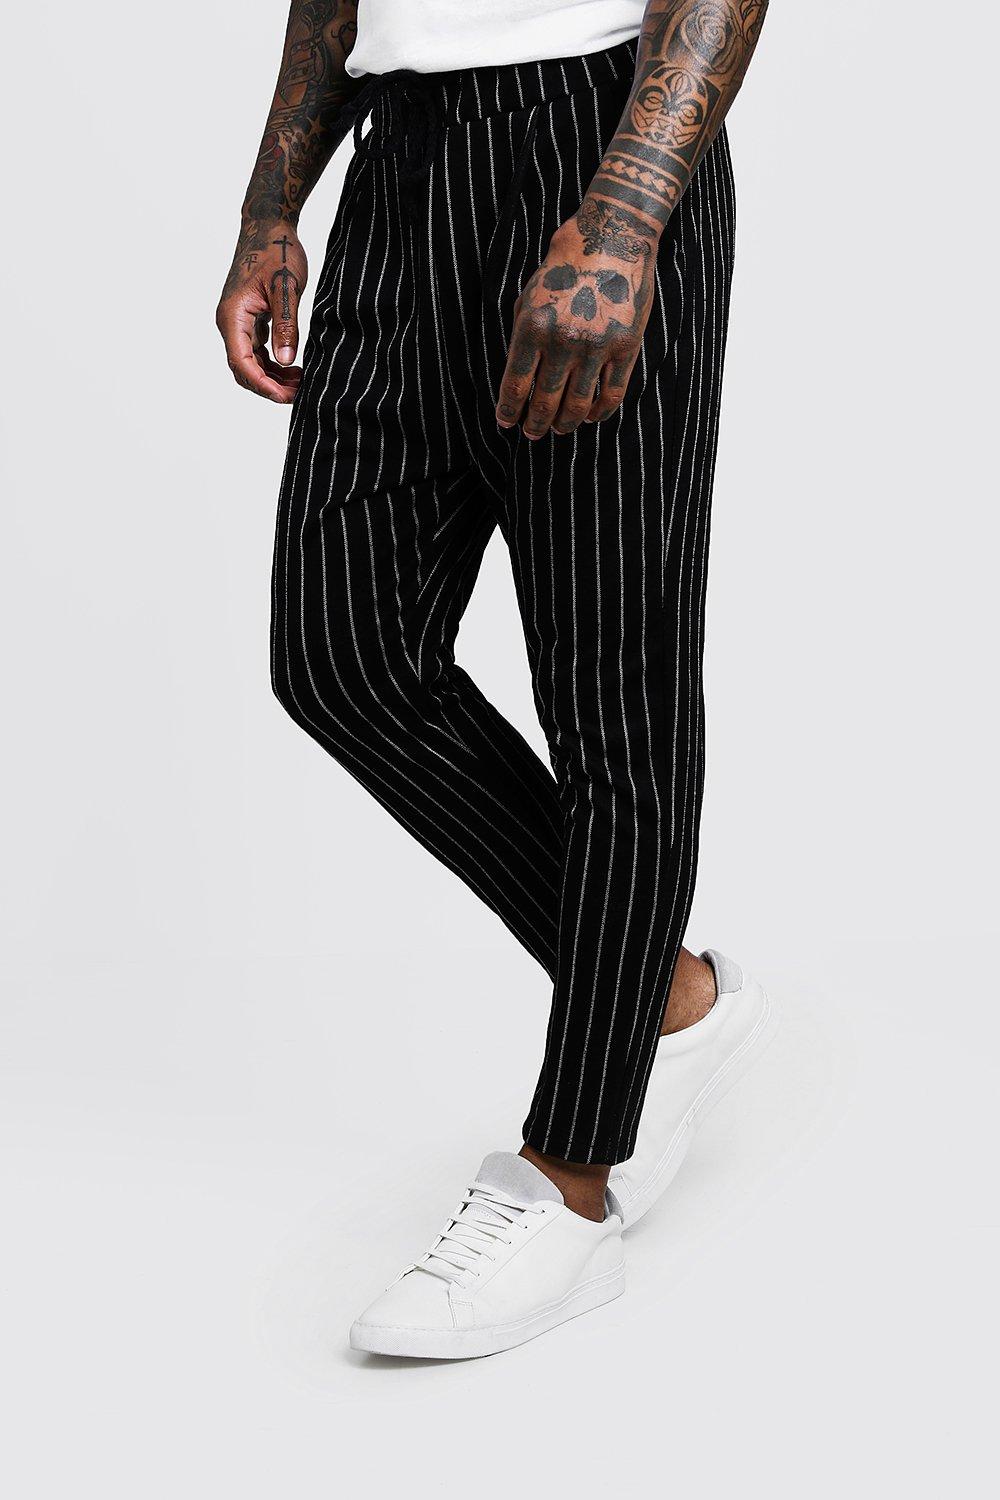 Bea Fluid Pinstripe Suit Pants - Black/White